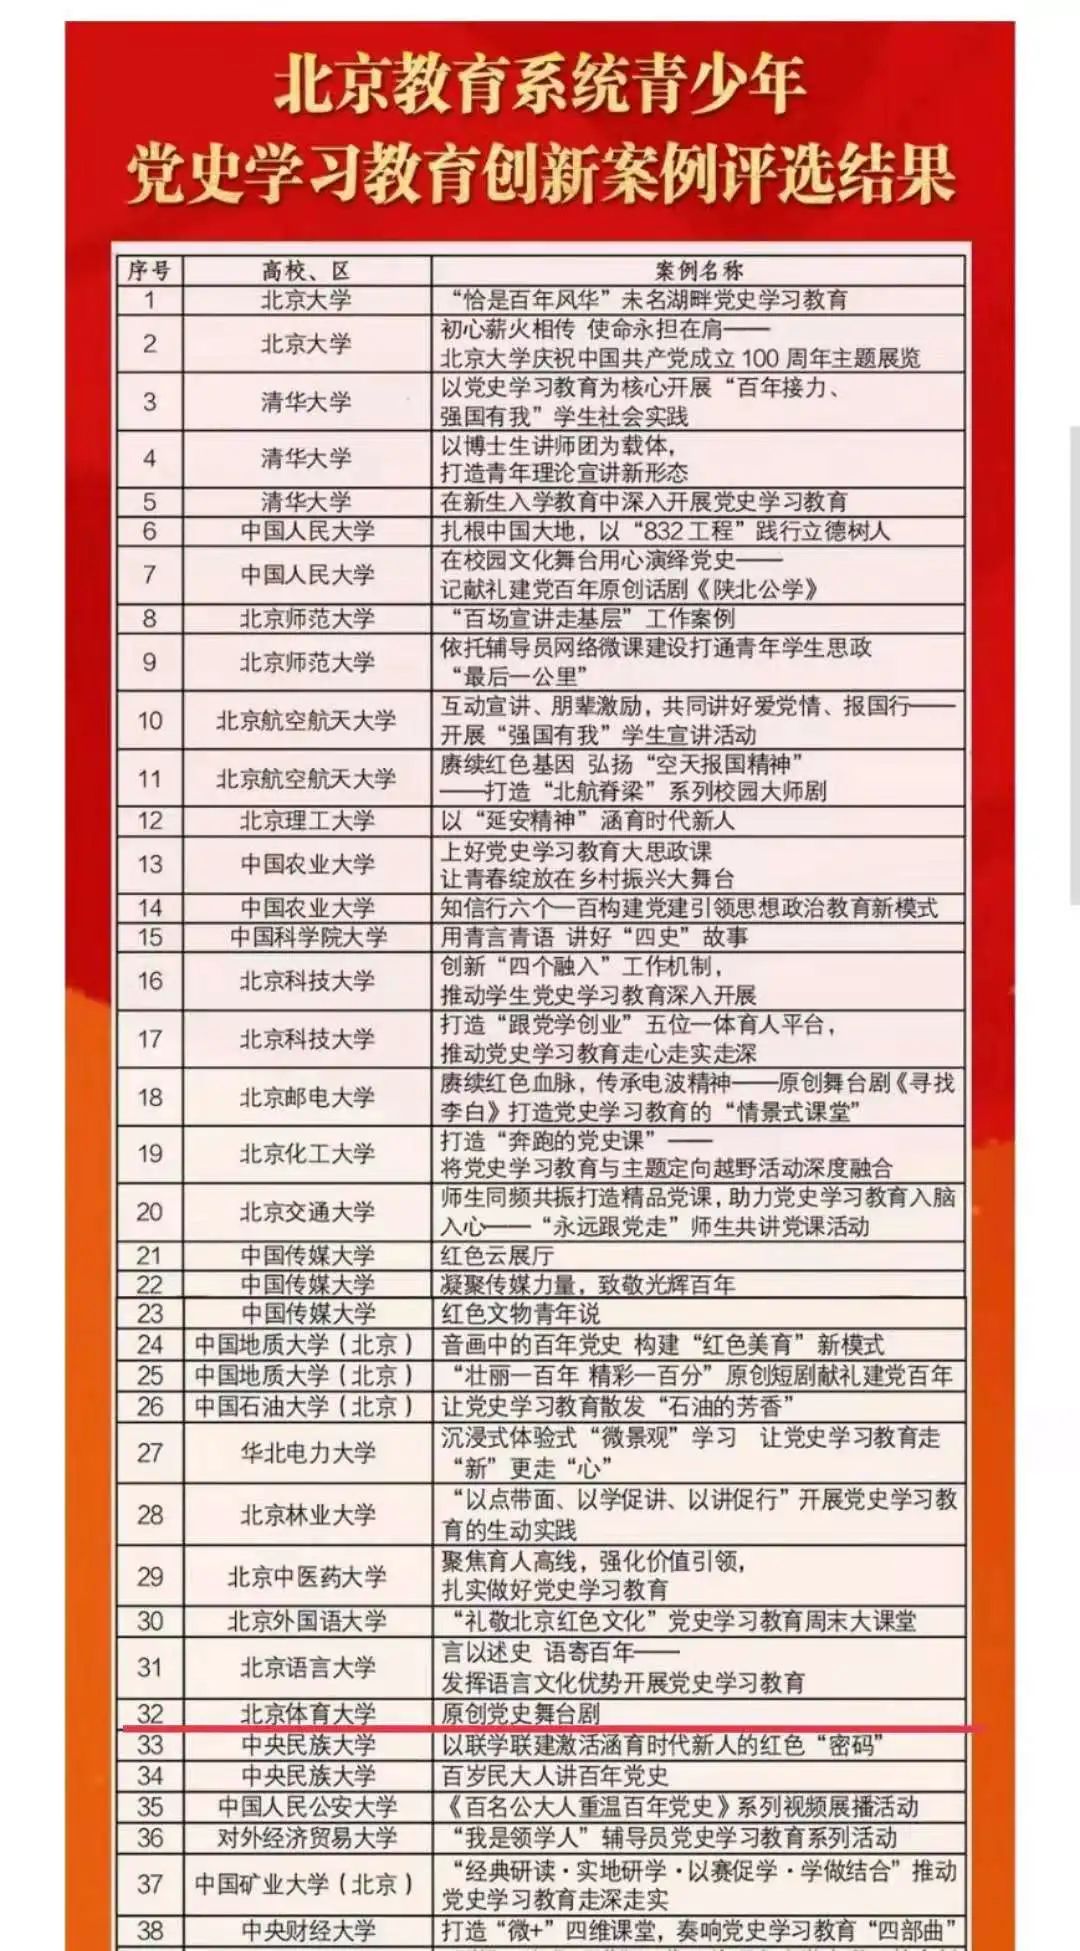 中国武术学院2022年上半年精彩回顾-北京体育大学-中国武术学院